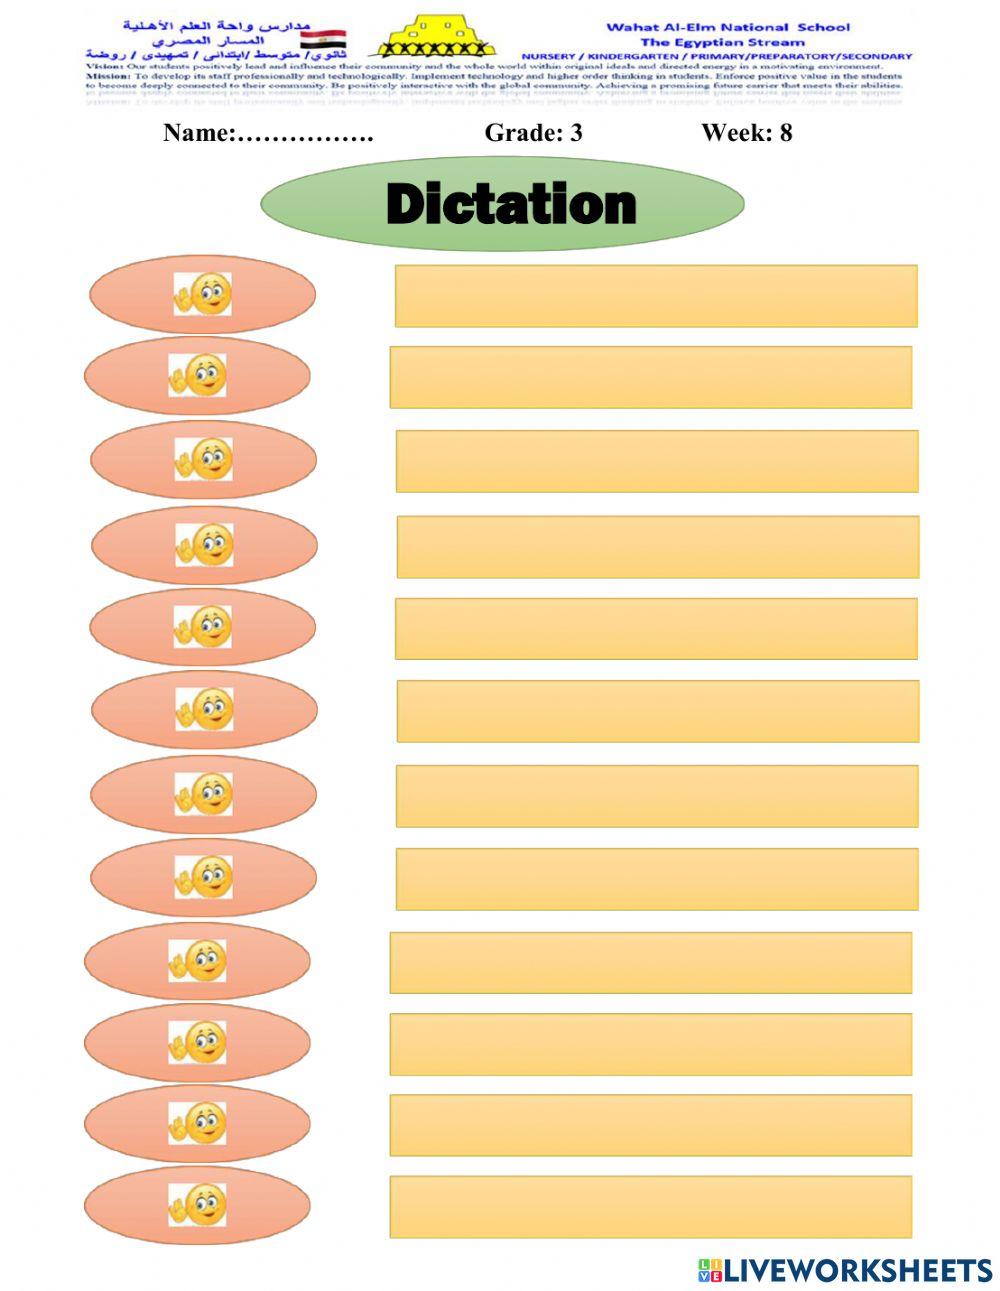 Dictation grade 3